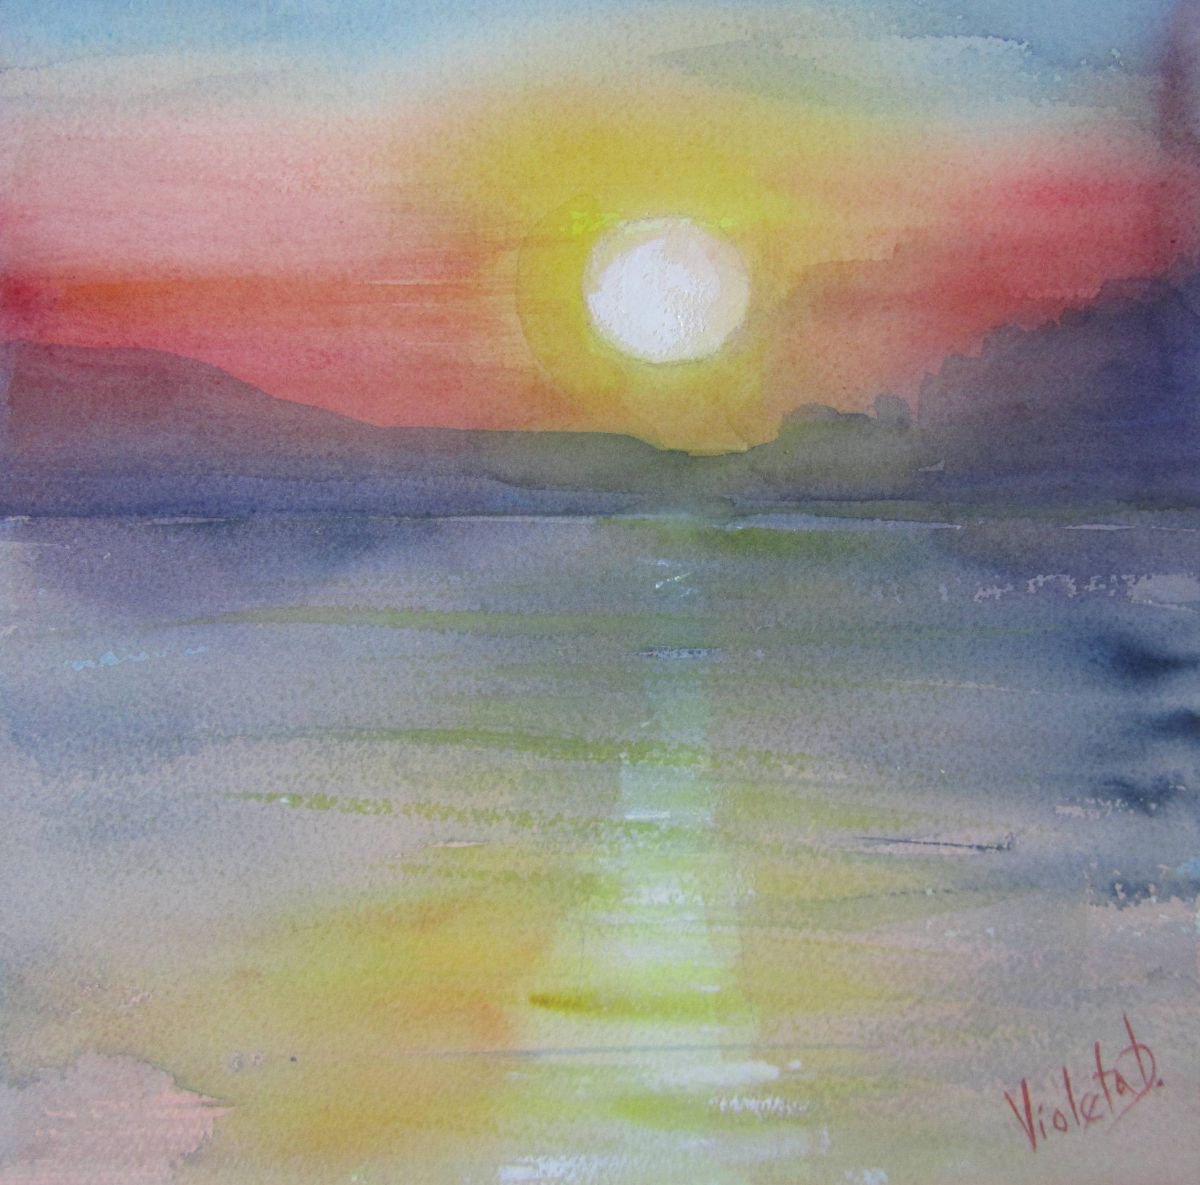 Homage to J.M.W. Turner: Sunrise in Santorini, Greece 4 by Violeta Damjanovic-Behrendt